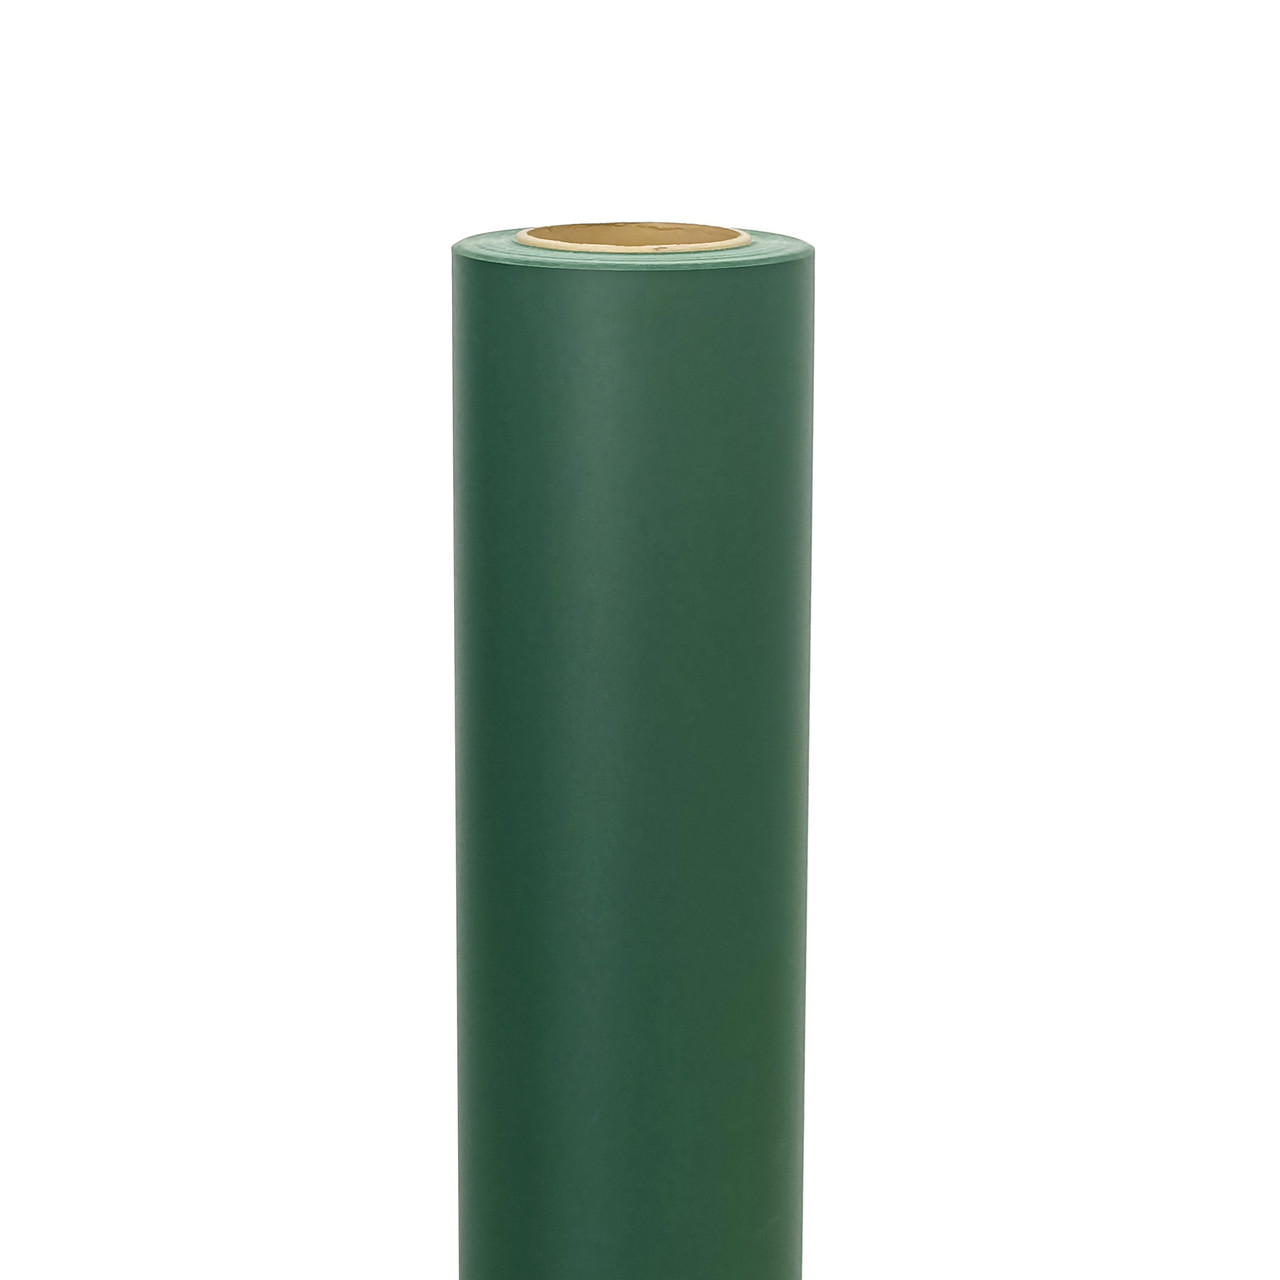 Пленка для рисования мелом - зеленая 1,27мХ30м